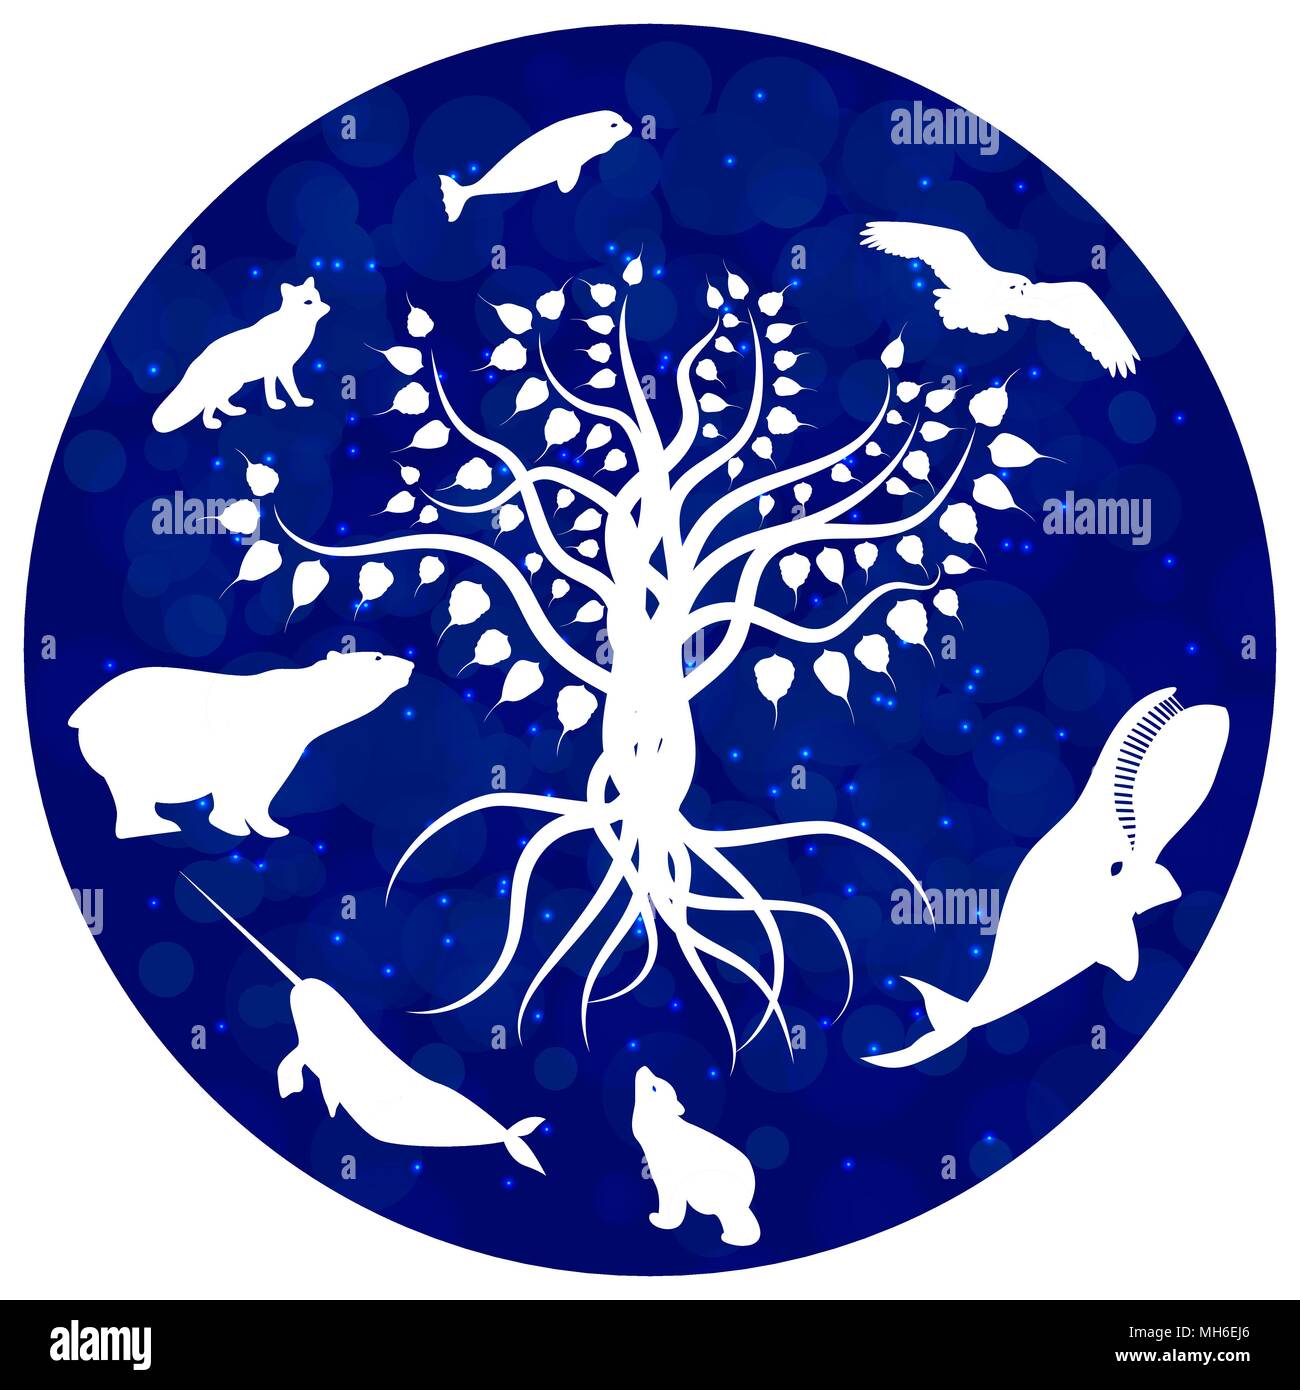 Internationaler Tag für biologische Vielfalt. Das Konzept der ökologischen Urlaub. Arktische Tiere und Baum, weiße Silhouetten. Blauer Kreis auf weißem zurück Stock Vektor